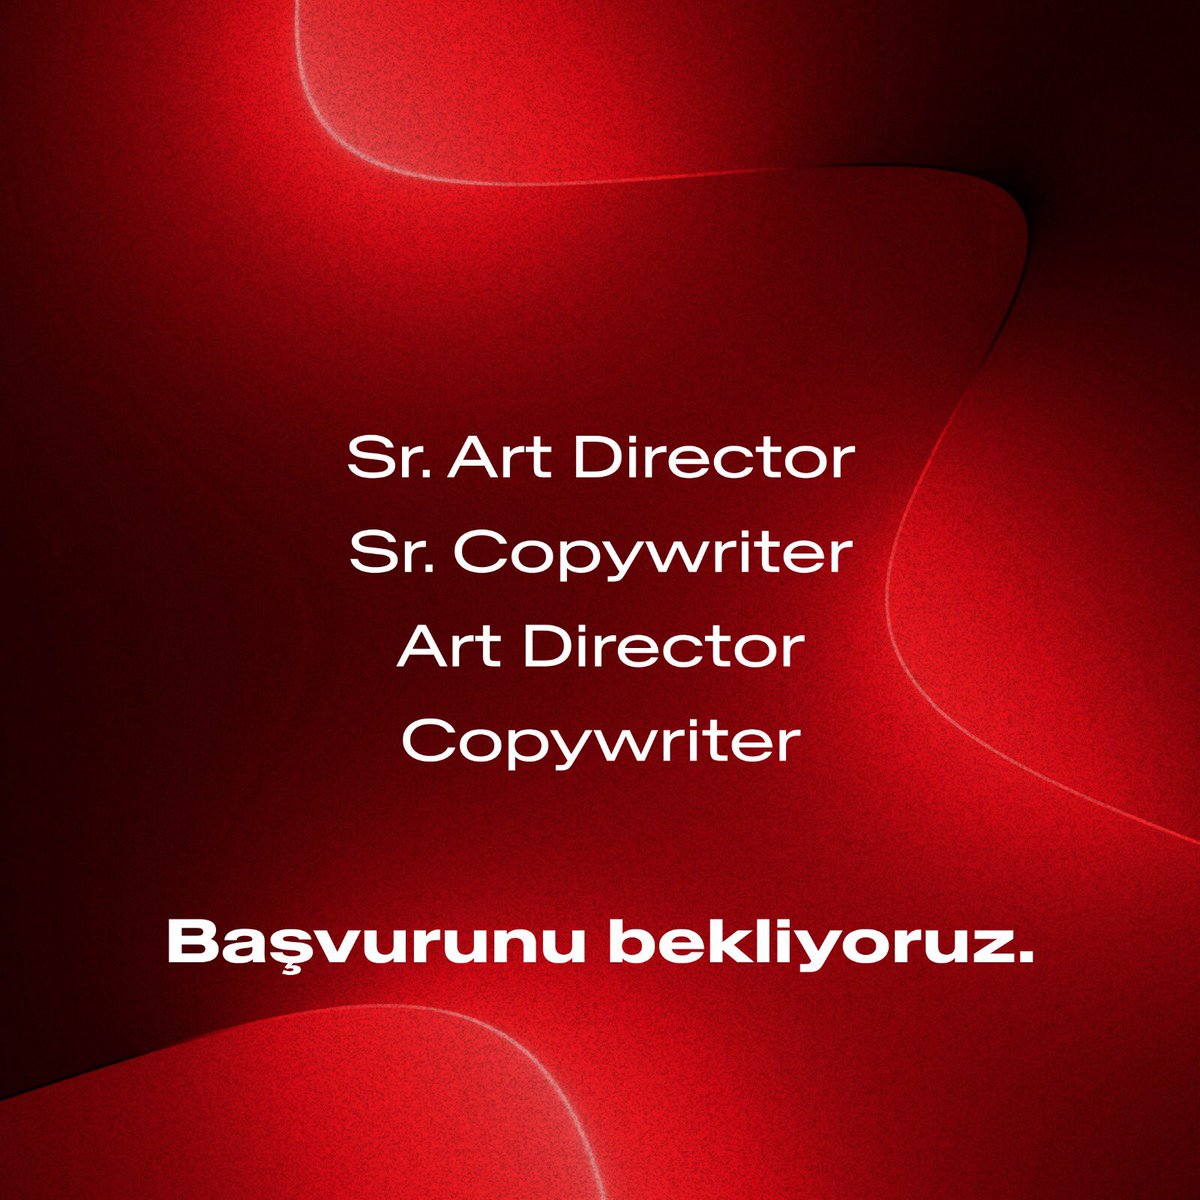 Türkiye’nin en büyük markalarından birinin yaratıcı ekibinde yer almak ister misin? Başvuru için tıklayınız: havas.talentics.app